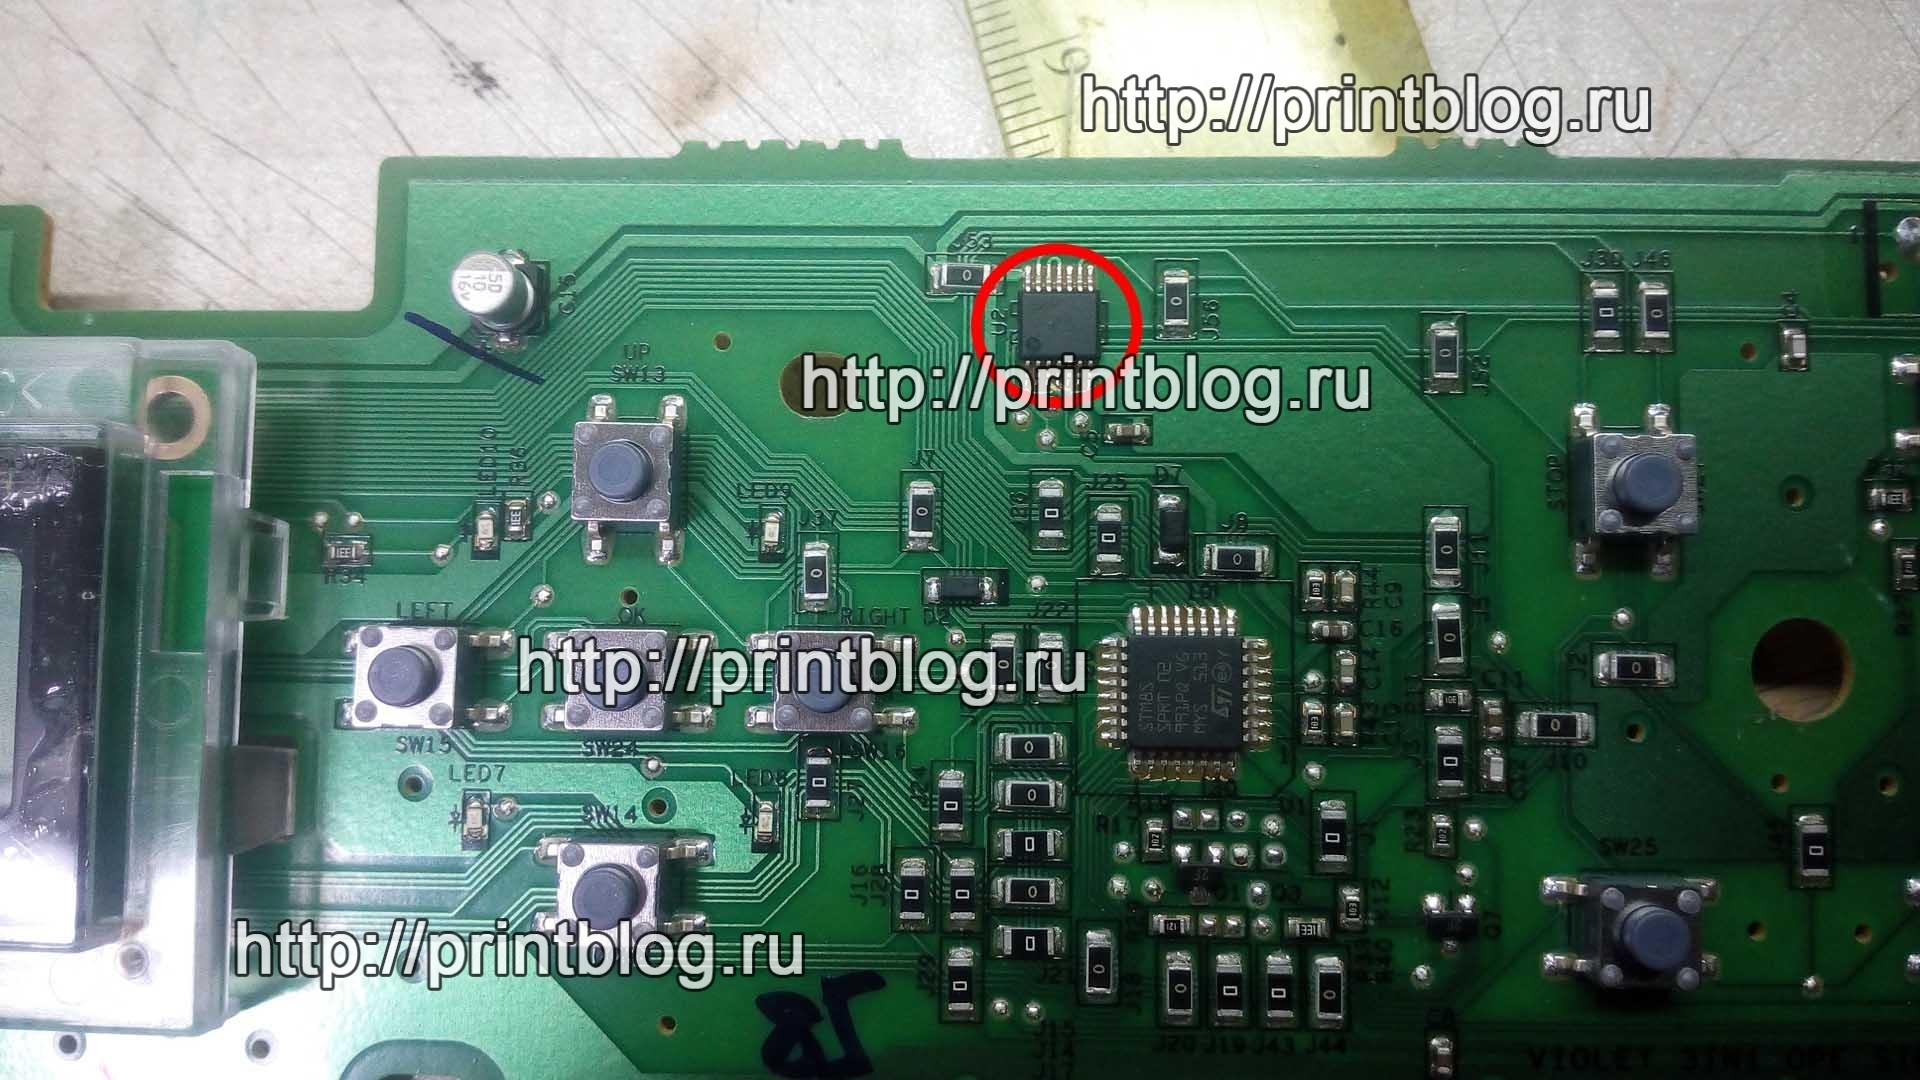 Сложный ремонт Samsung M2070, не включается, не определяется компьютером, черные квадраты на экране